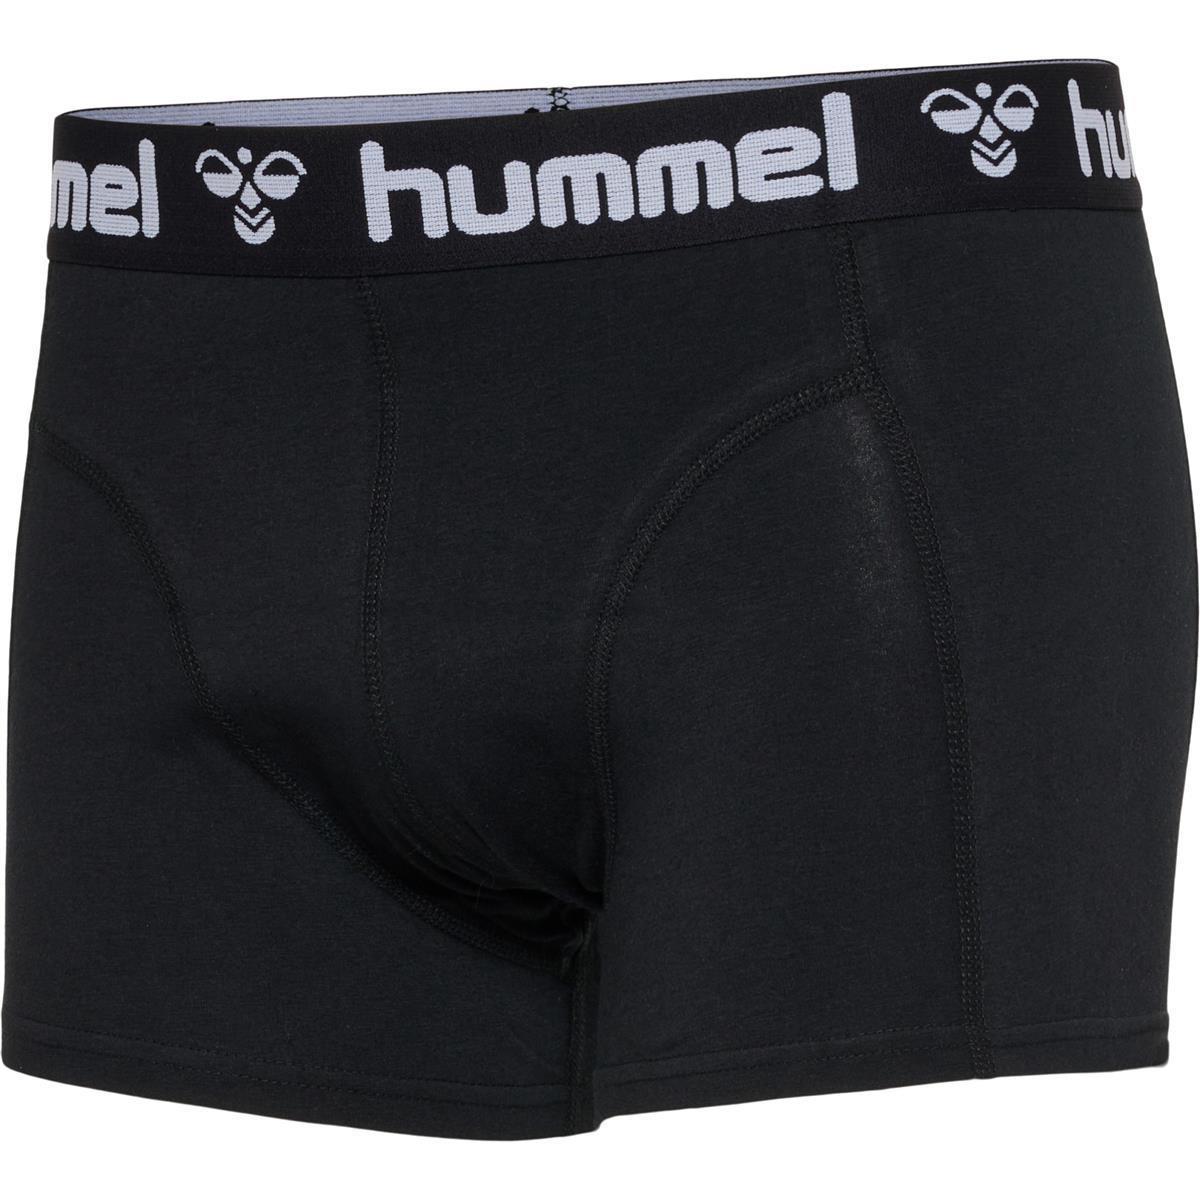 Hummel HMLMARS 2PACK BOXERS - BLACK/WHITE - S